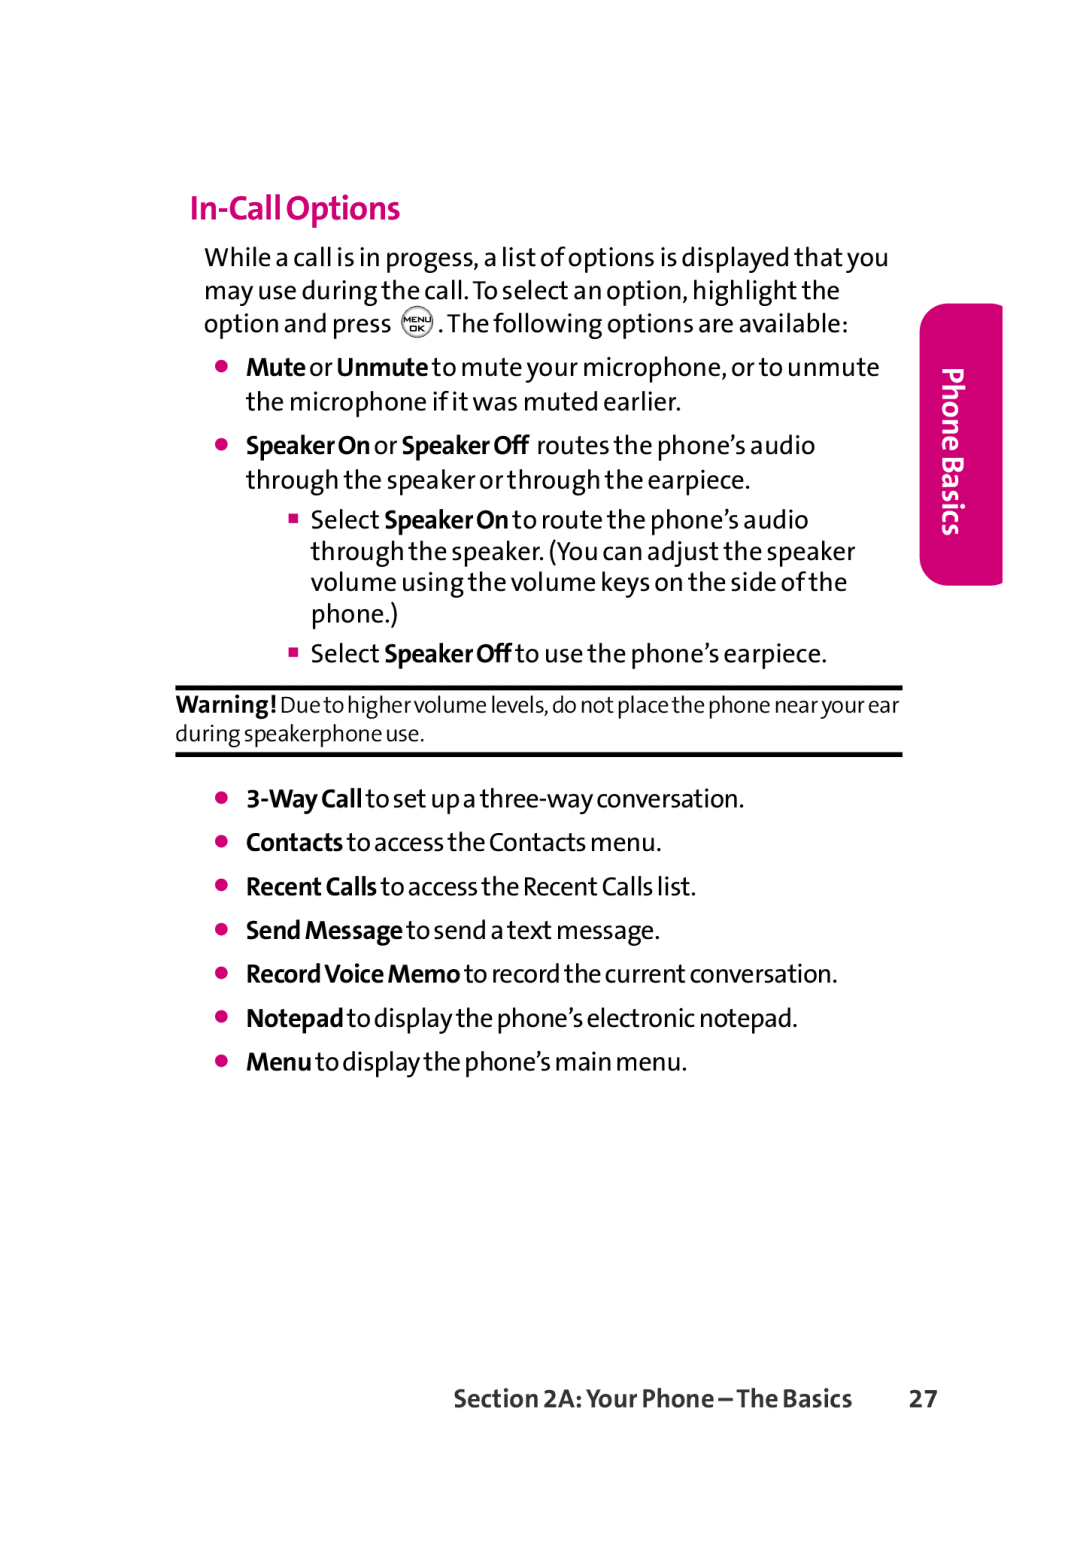 LG Electronics 350 manual In-Call Options, Phone Basics 